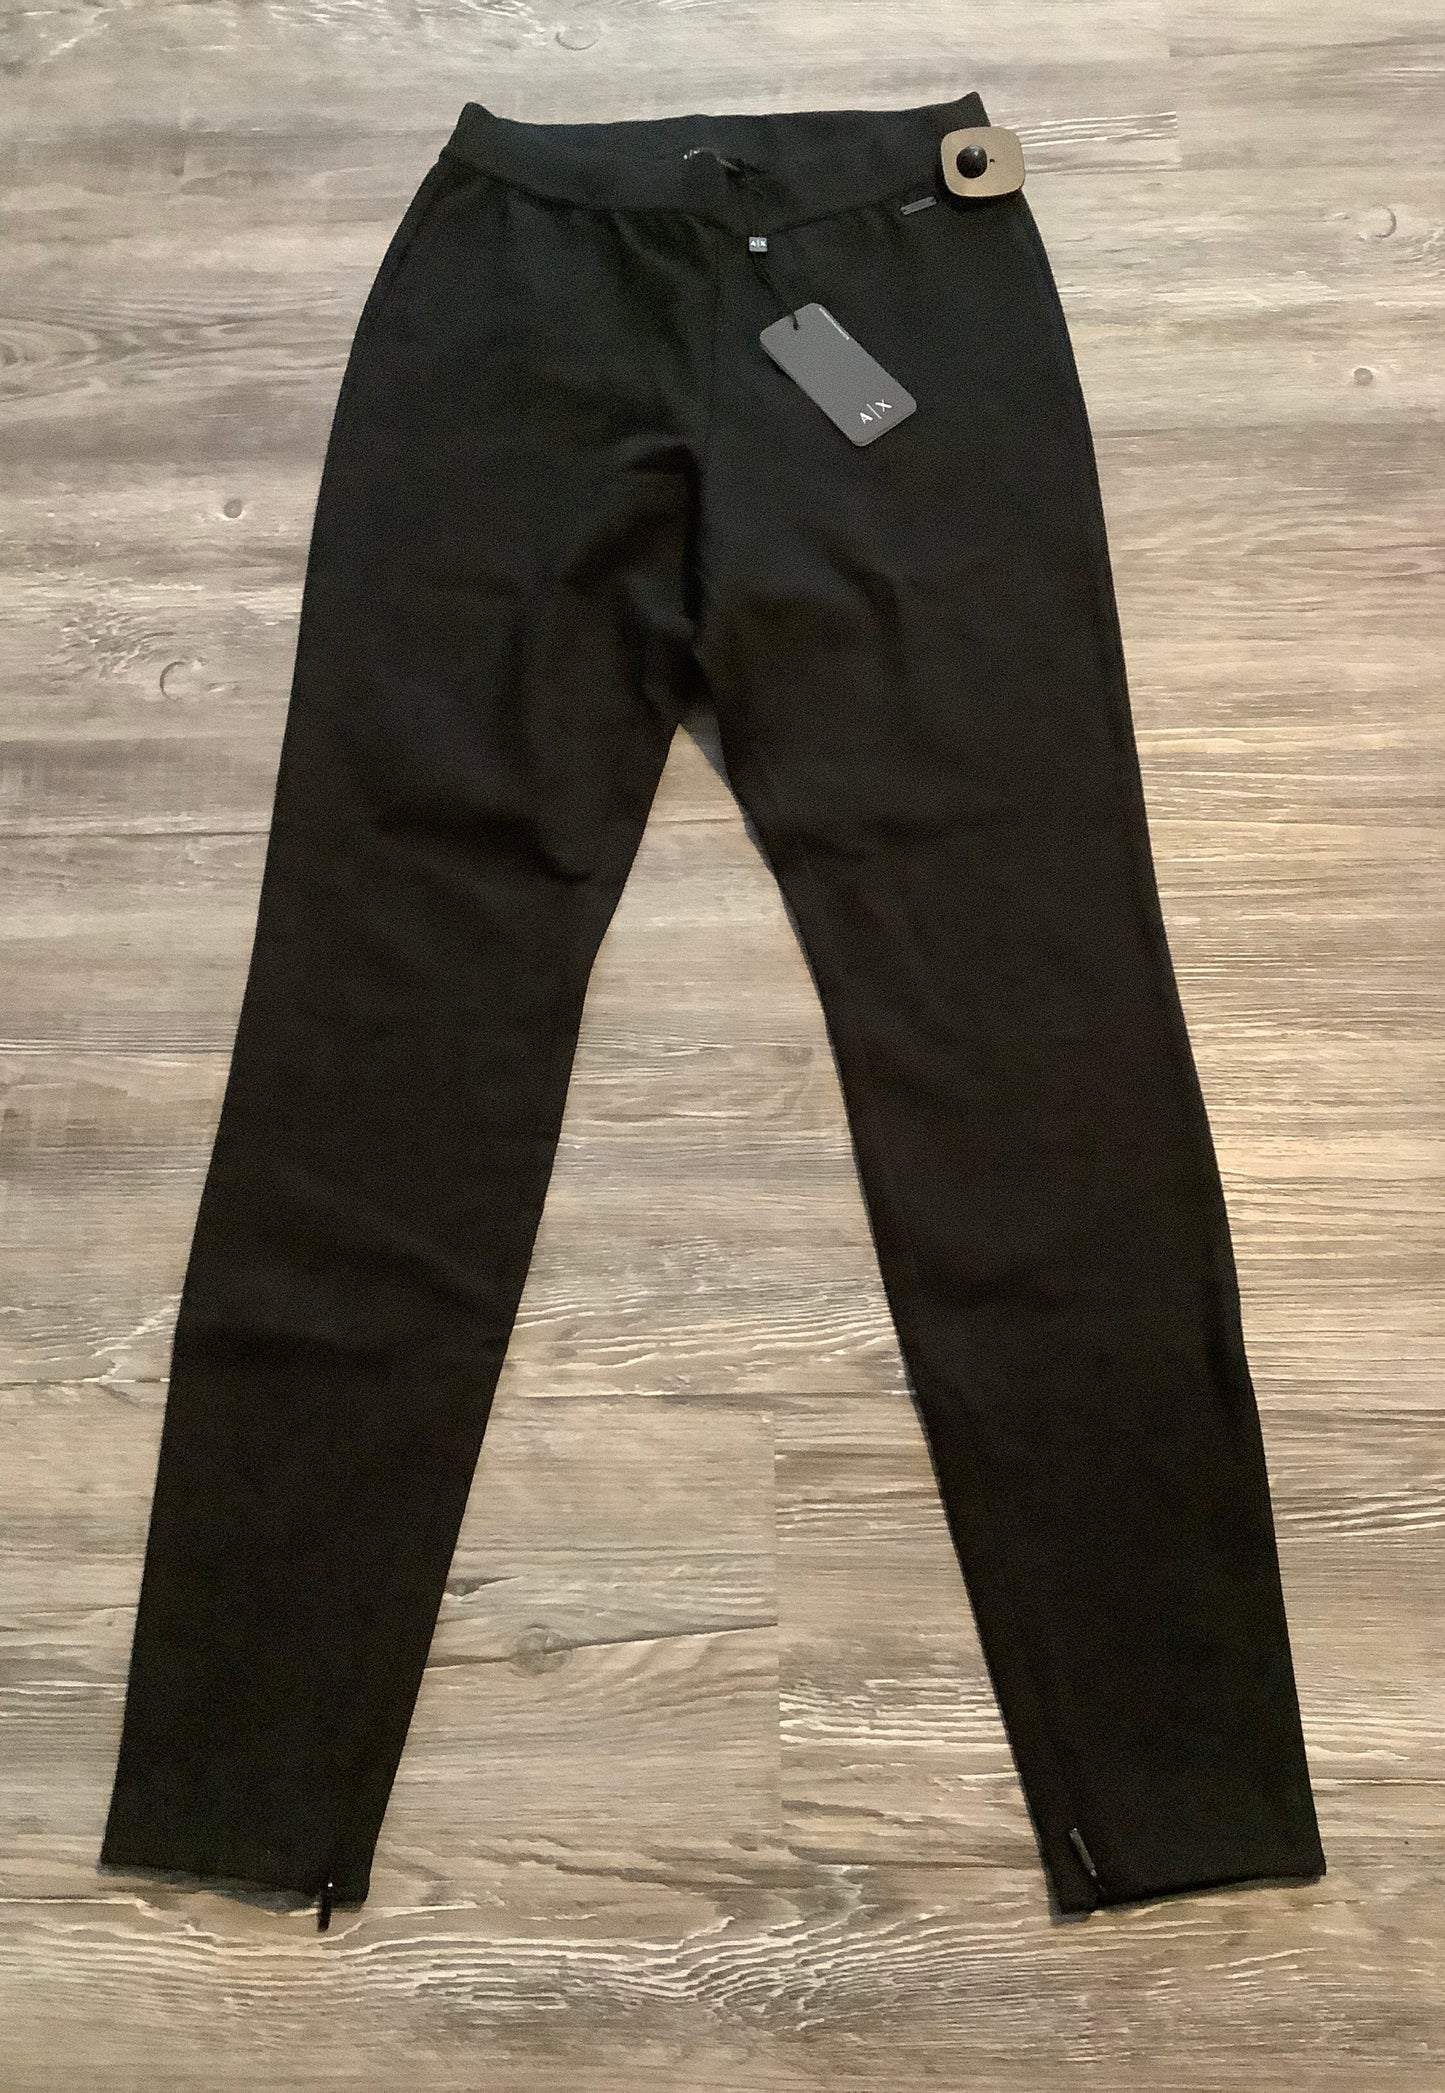 Black Pants Leggings Armani Exchange, Size Xs